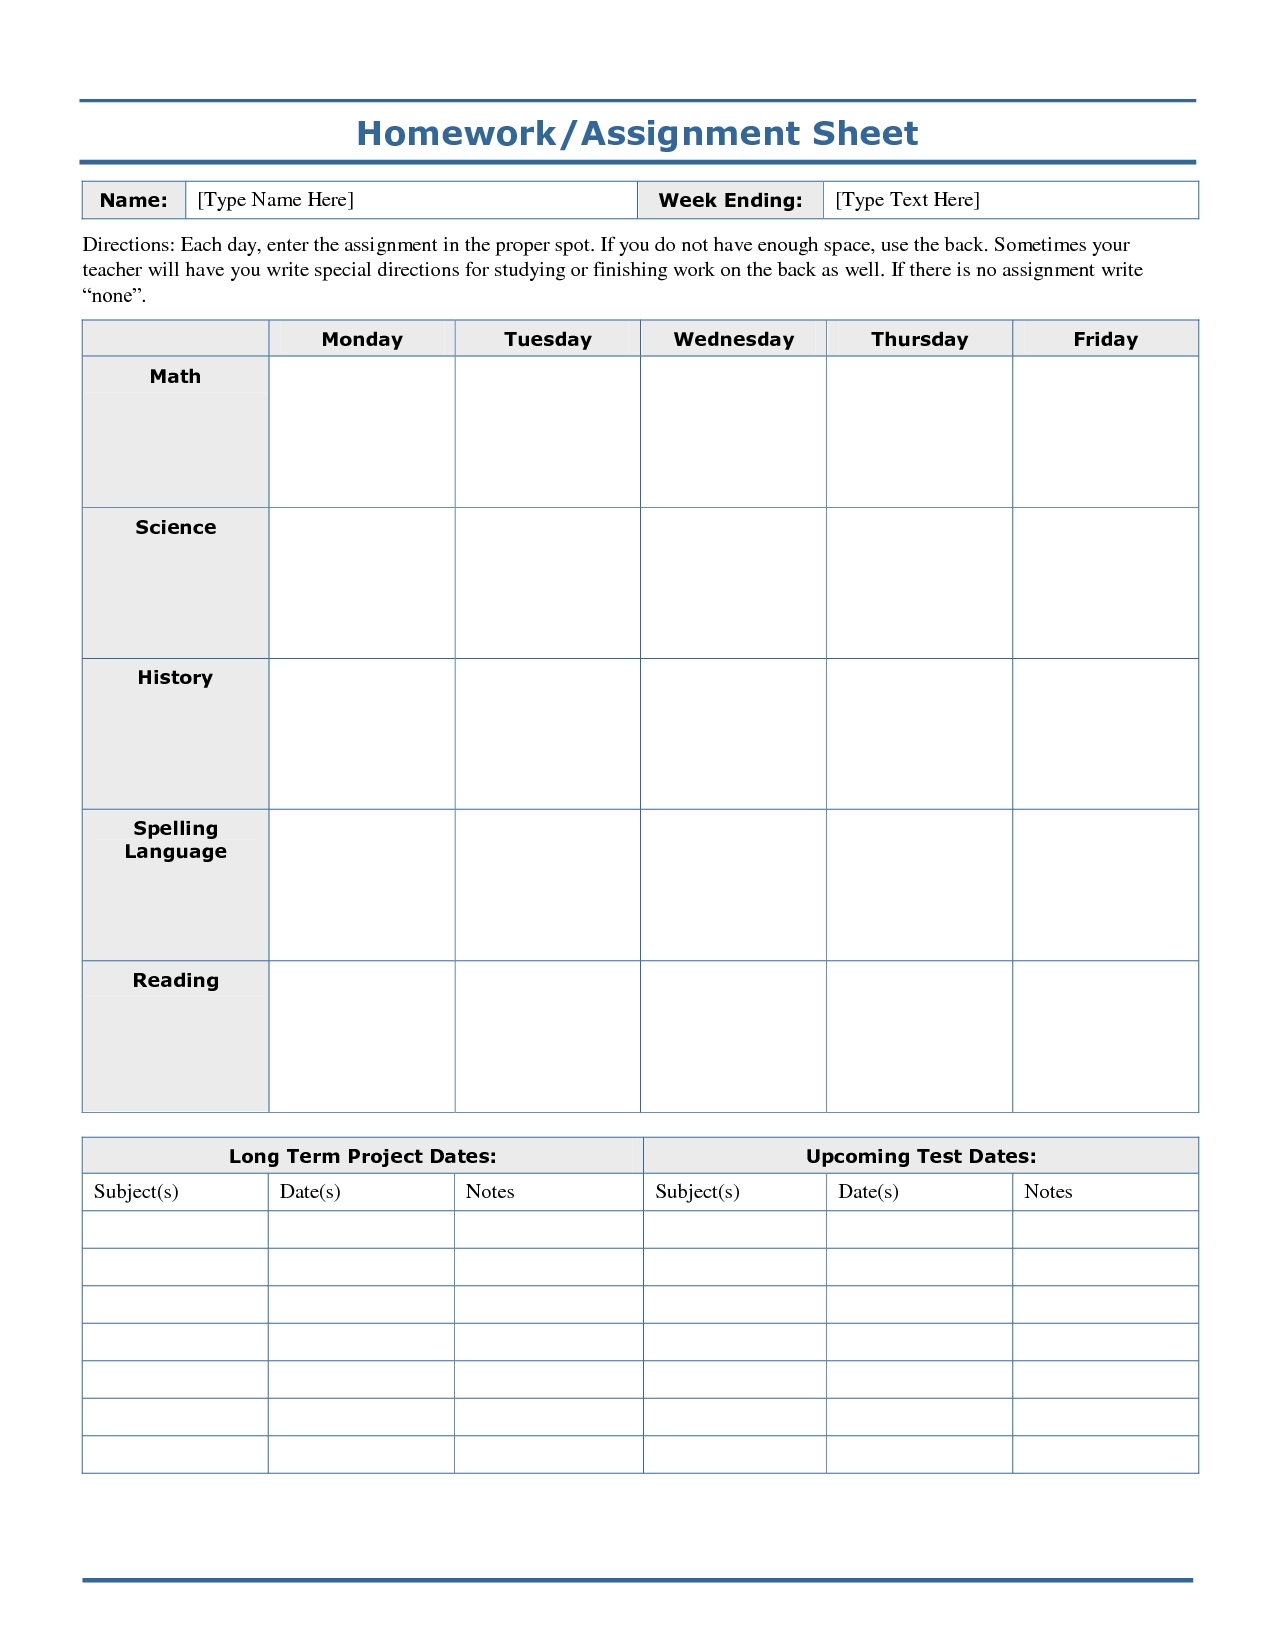 Weekly Homework Assignment Sheet Template | Homework Sheet